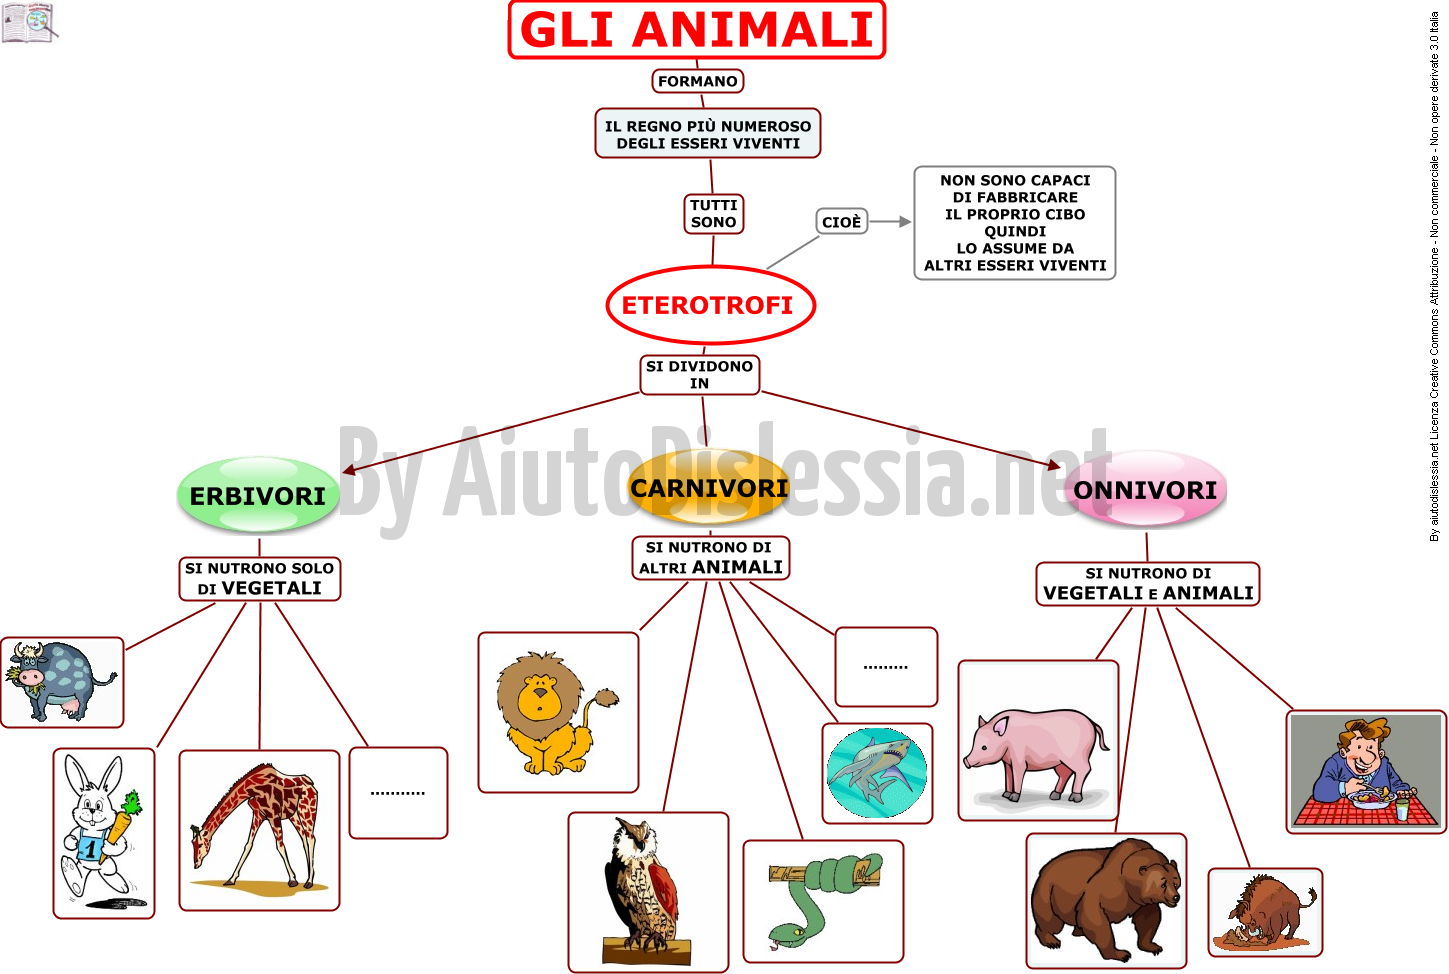 04. GLI ANIMALI - CLASSIFICAZIONE 2